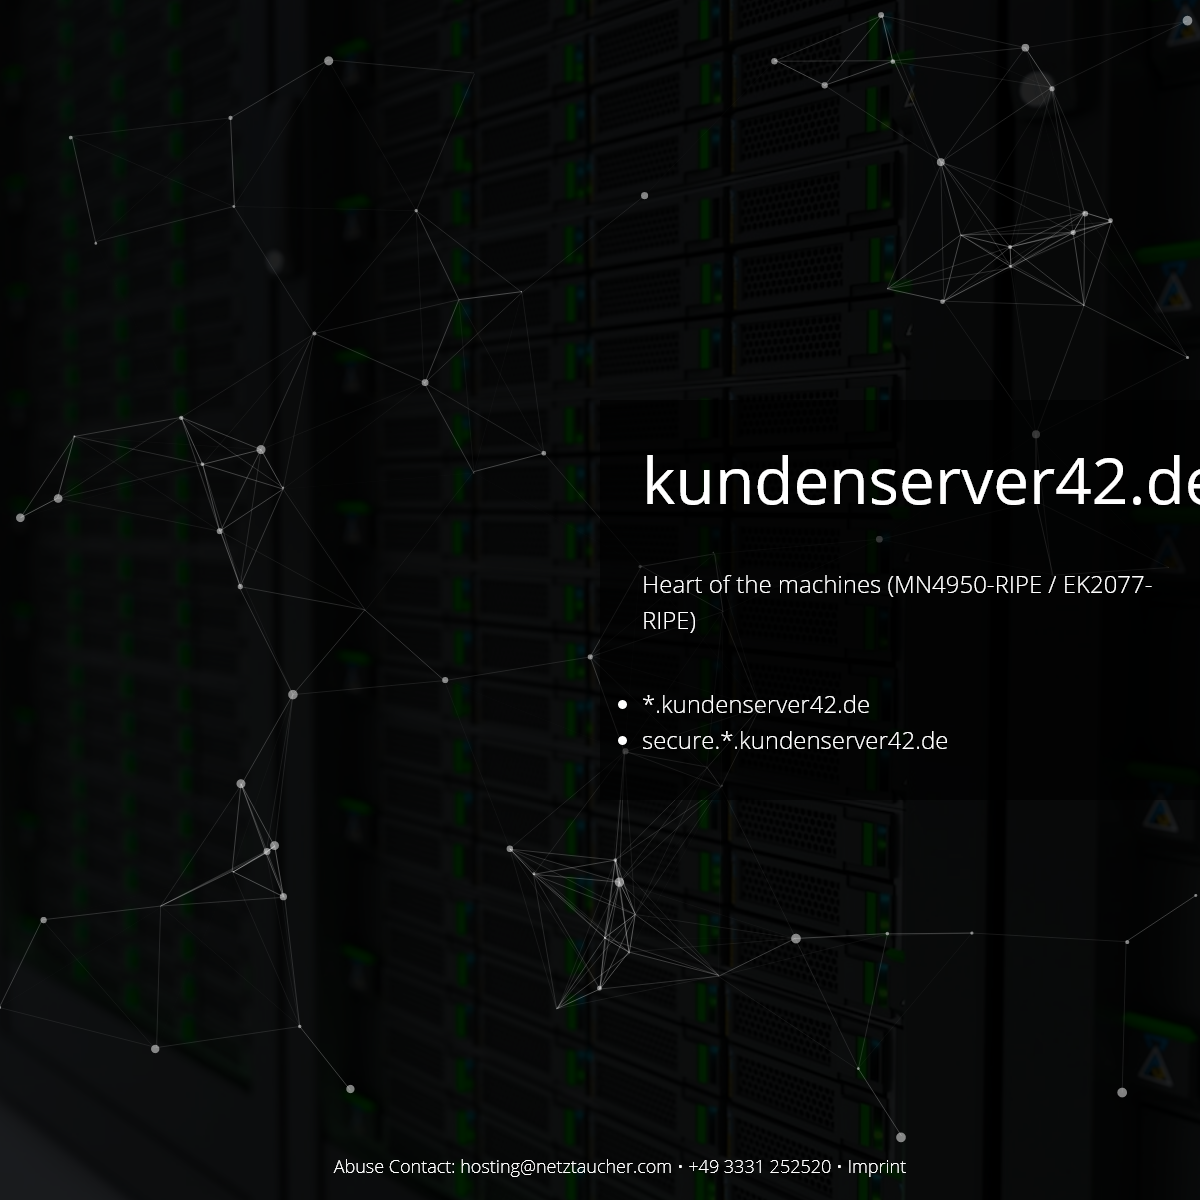 A complete backup of kundenserver42.de